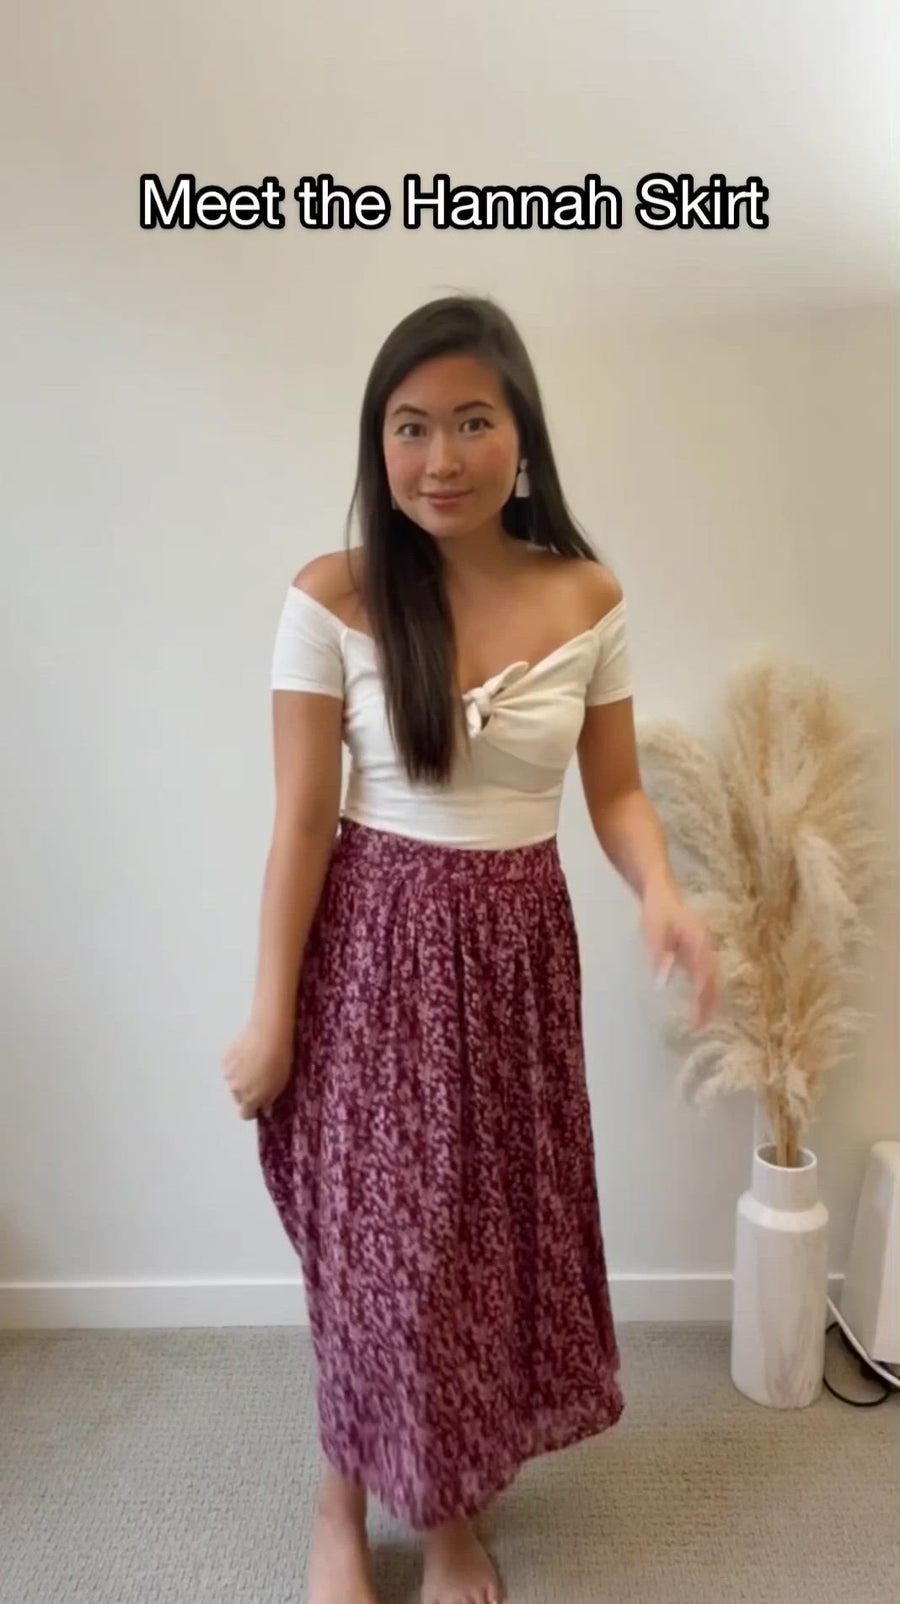 Hannah Skirt in Cherry